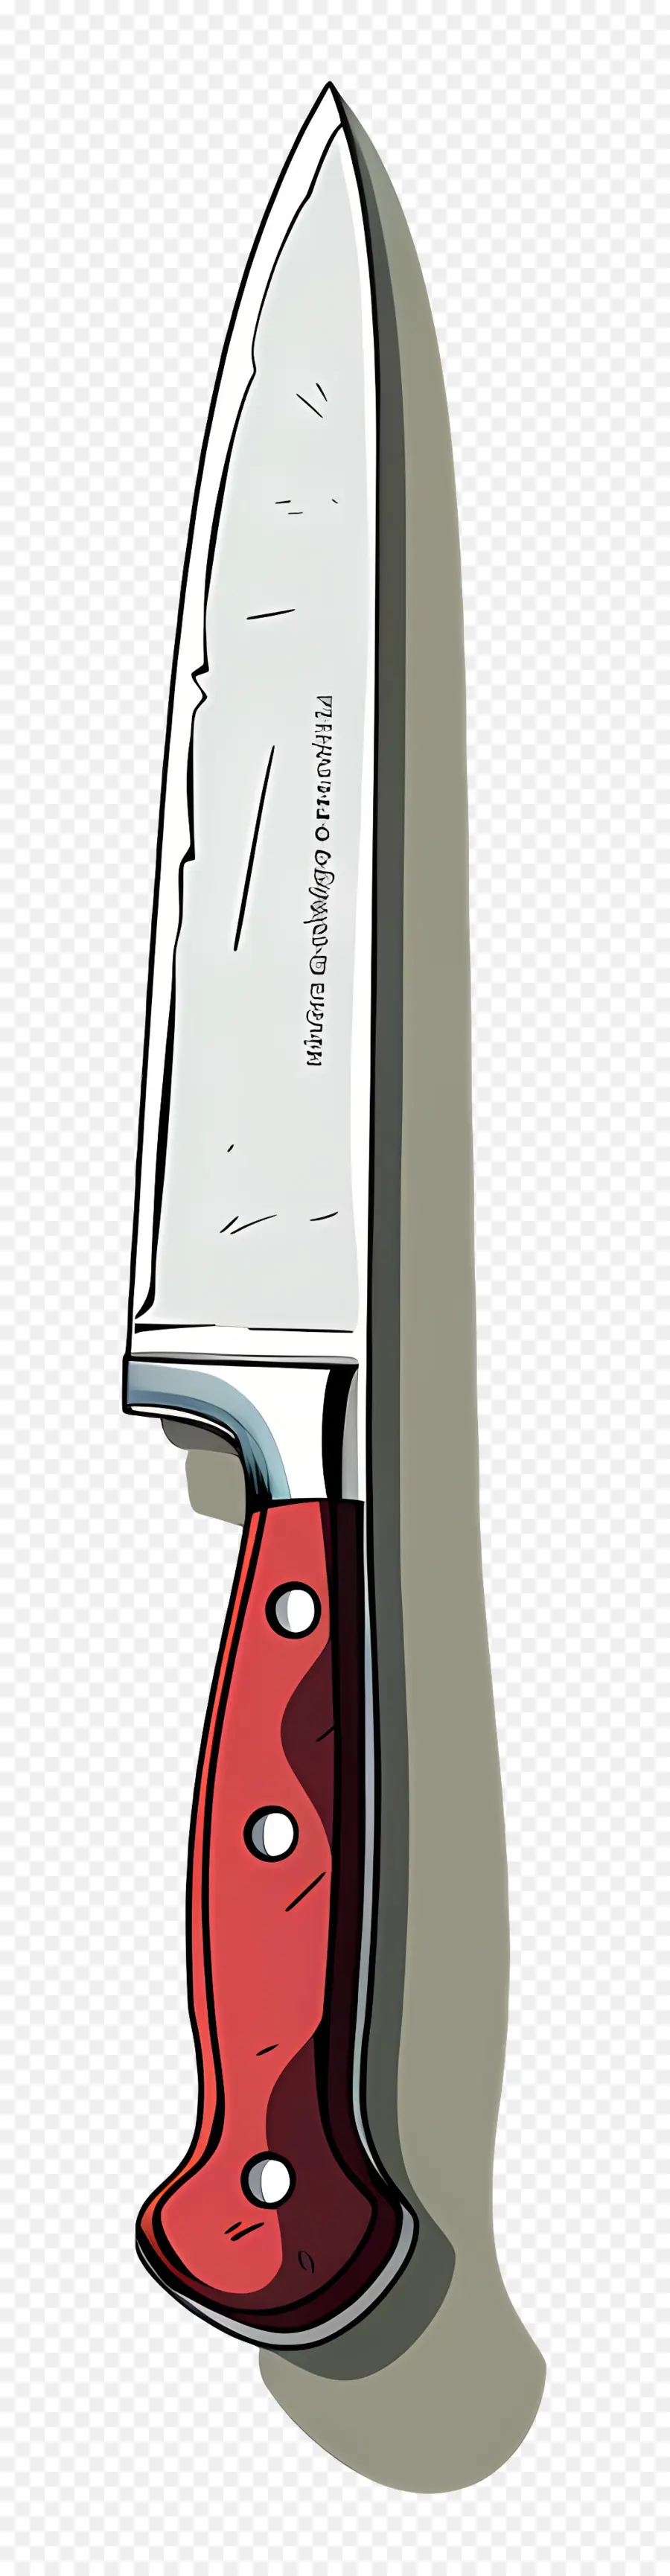 سكين，سكين المطبخ PNG